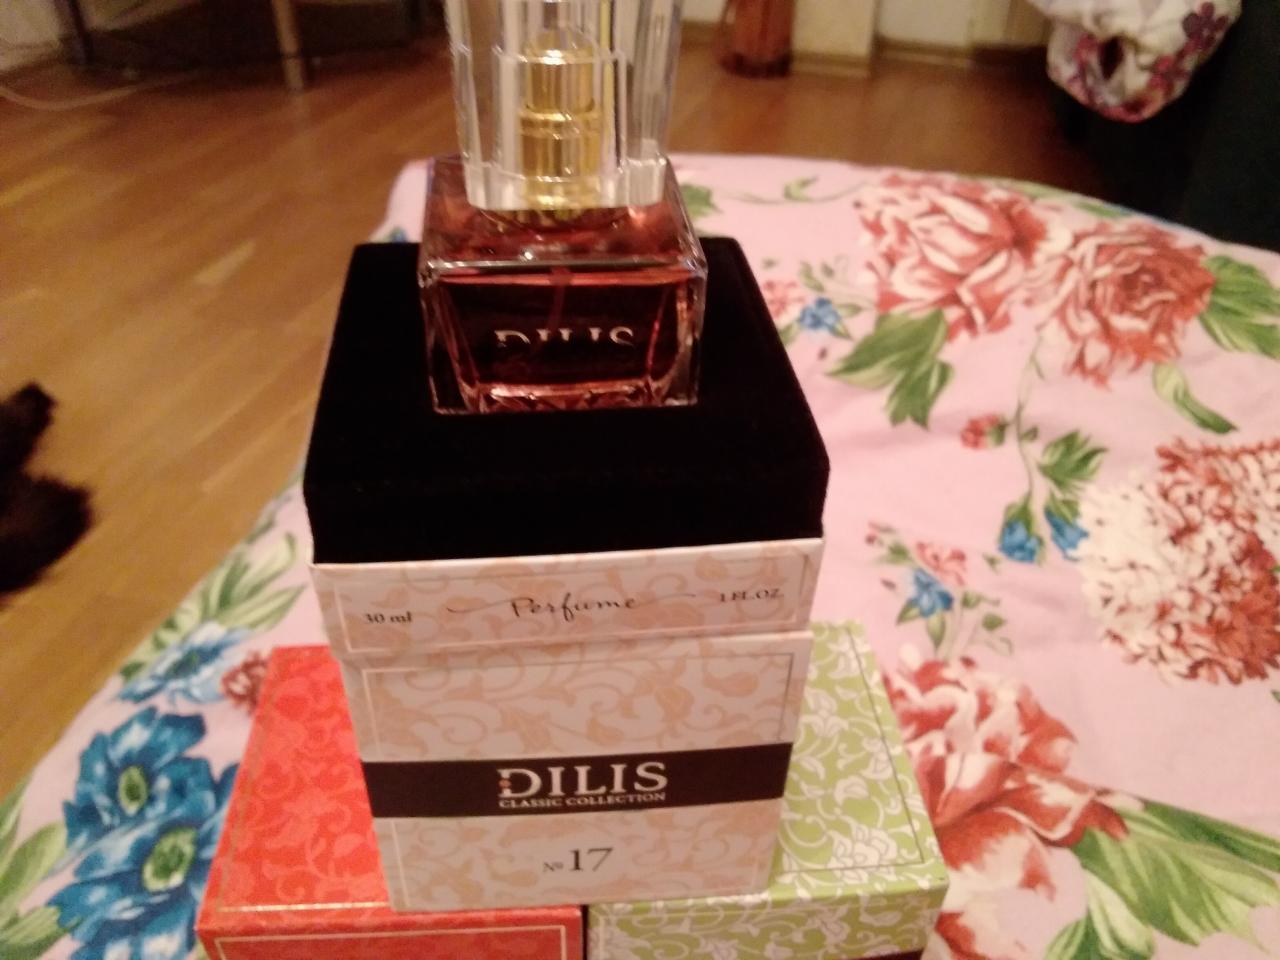 Отзыв на товар: Духи Classic Collection. Dilis Parfum. Вид 3 от 27.04.2023 